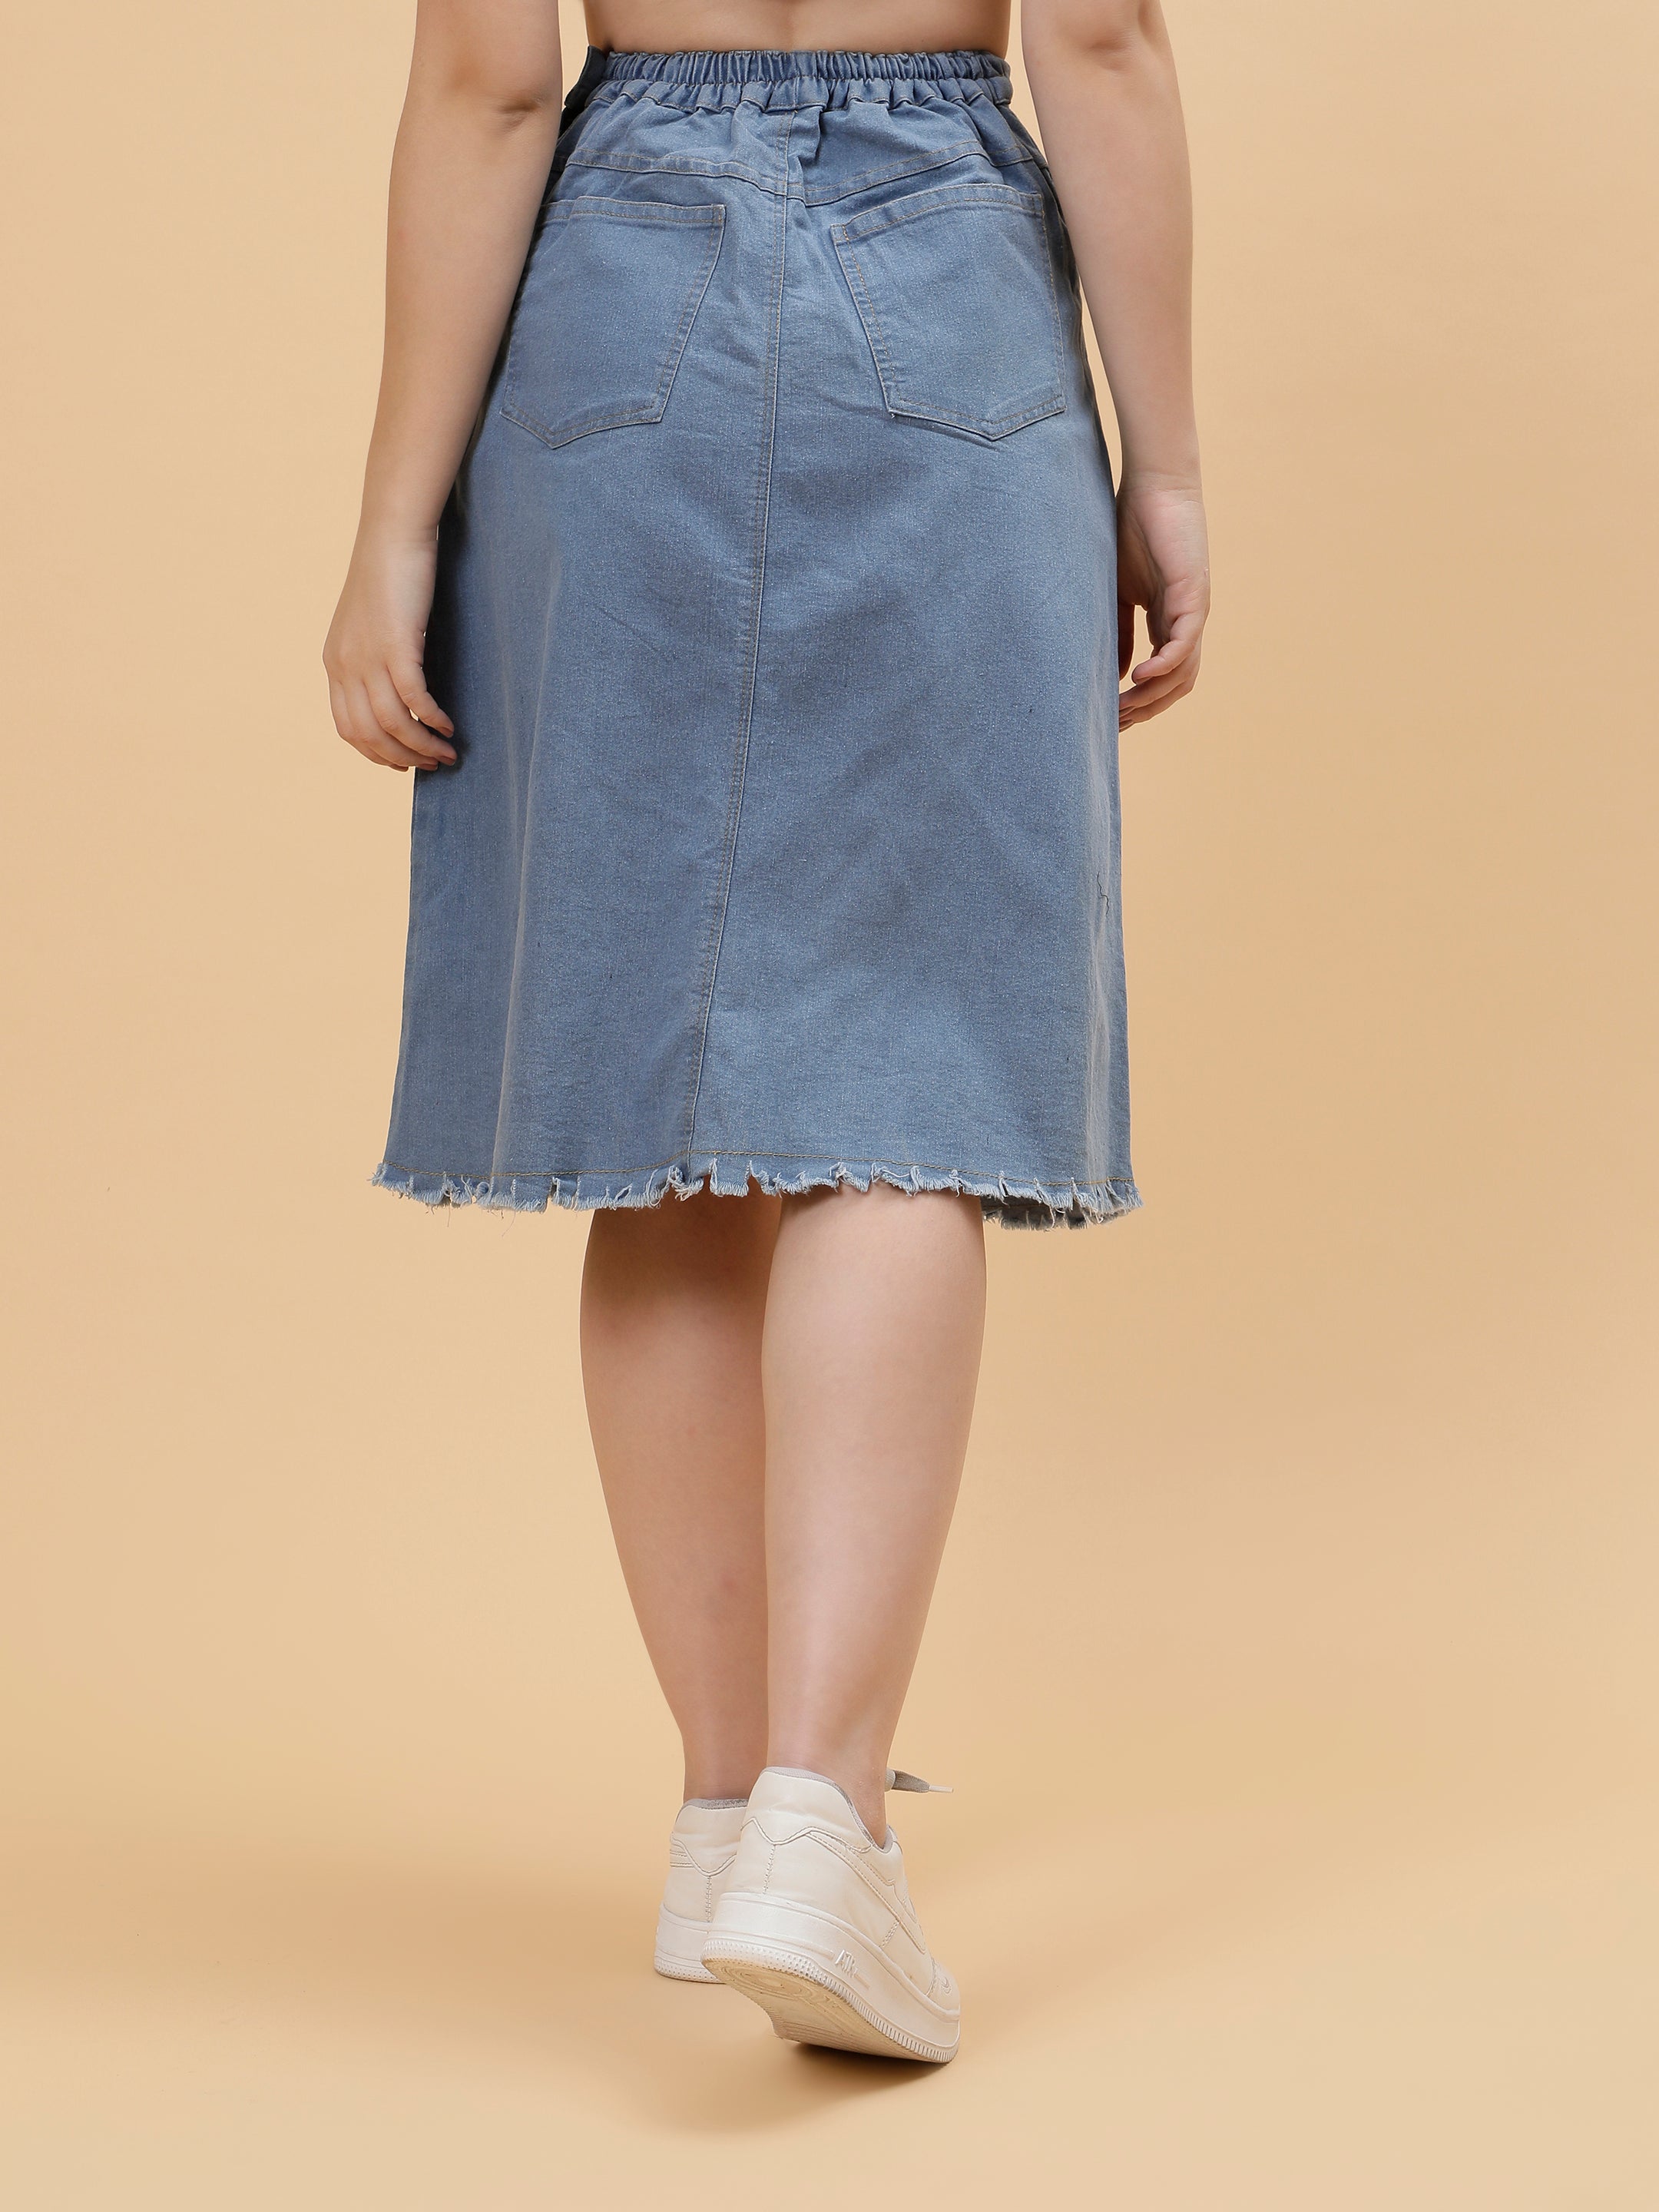 Denim Light Blue Skirt For Women